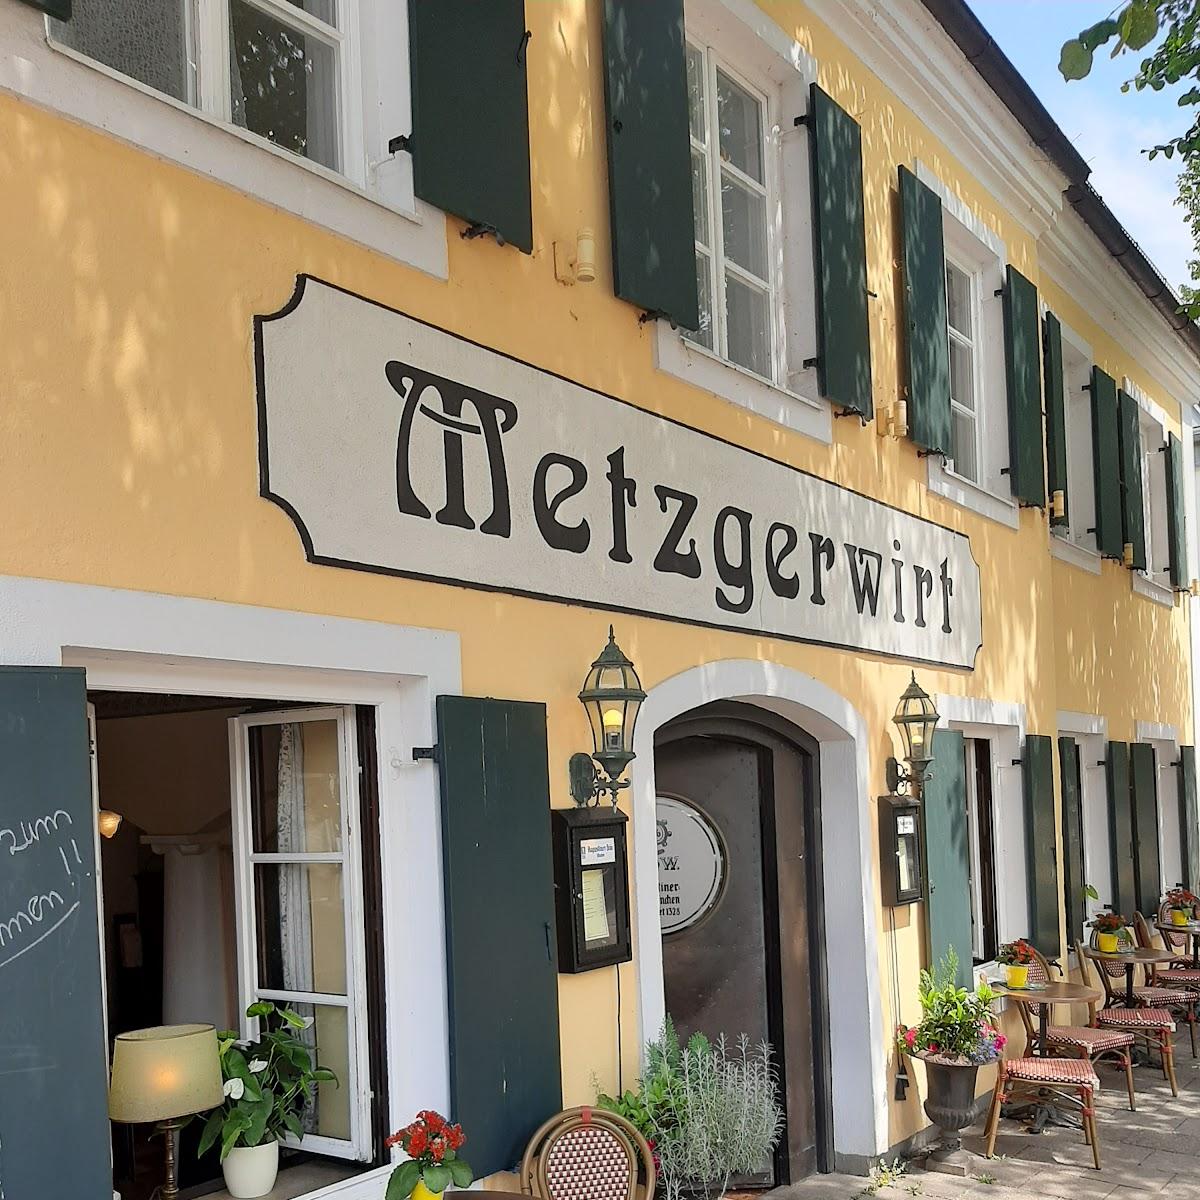 Restaurant "Metzgerwirt" in München